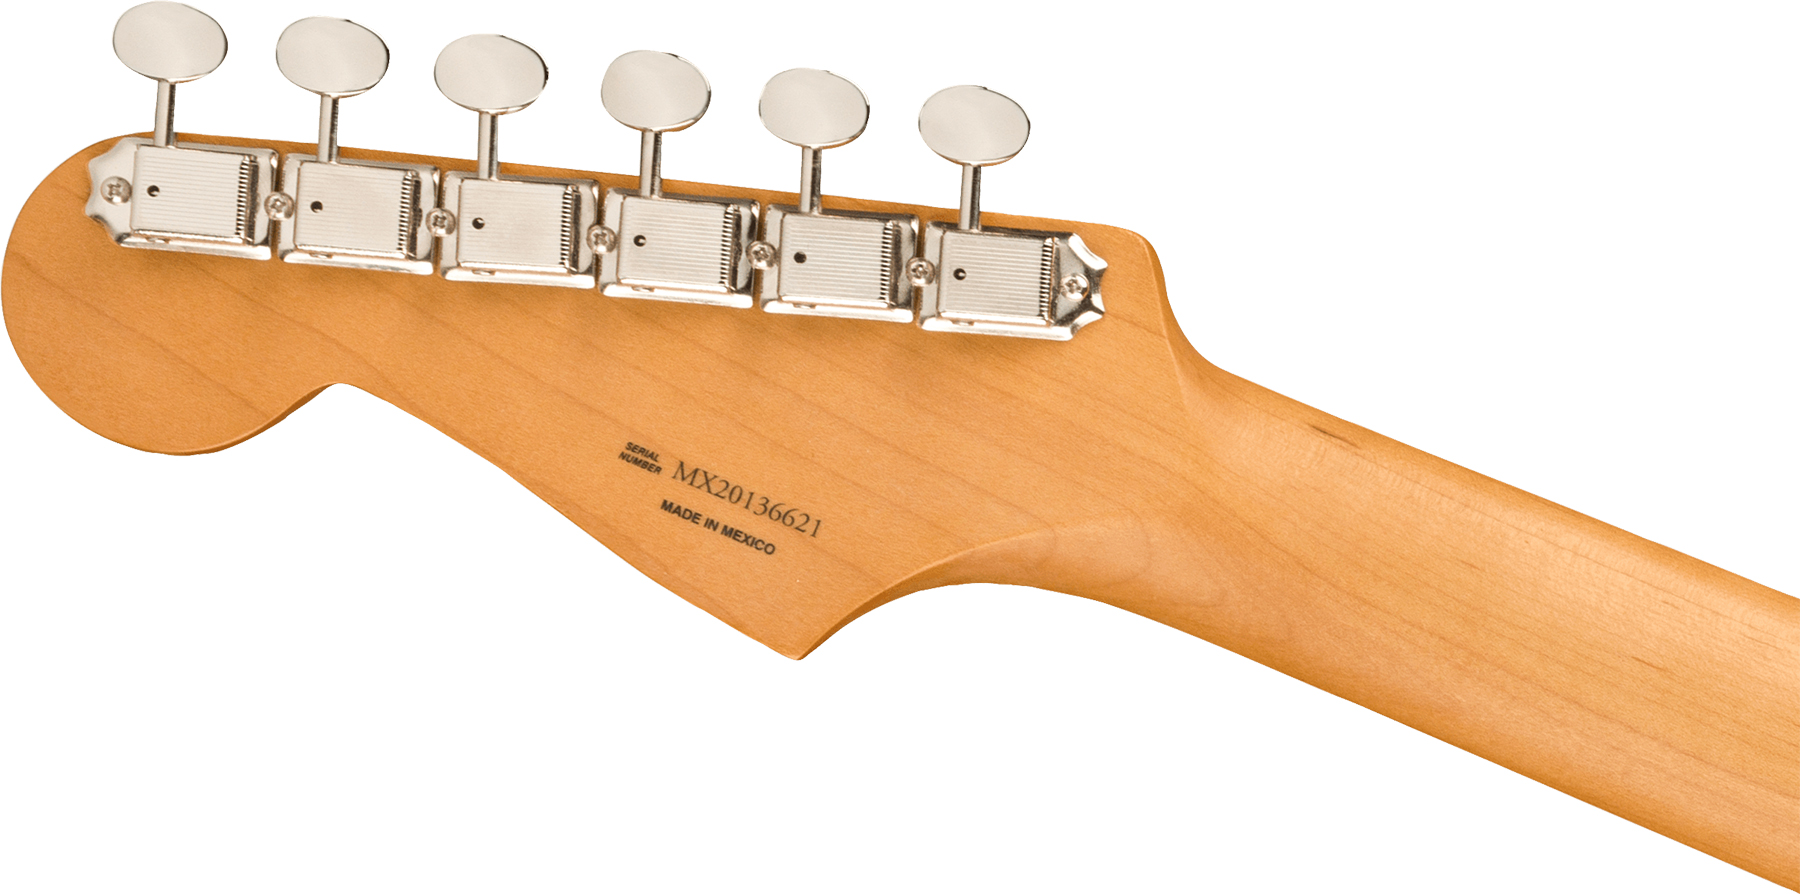 Fender Strat Noventa Mex Ss Ht Pf +housse - Crimson Red Transparent - E-Gitarre in Str-Form - Variation 3